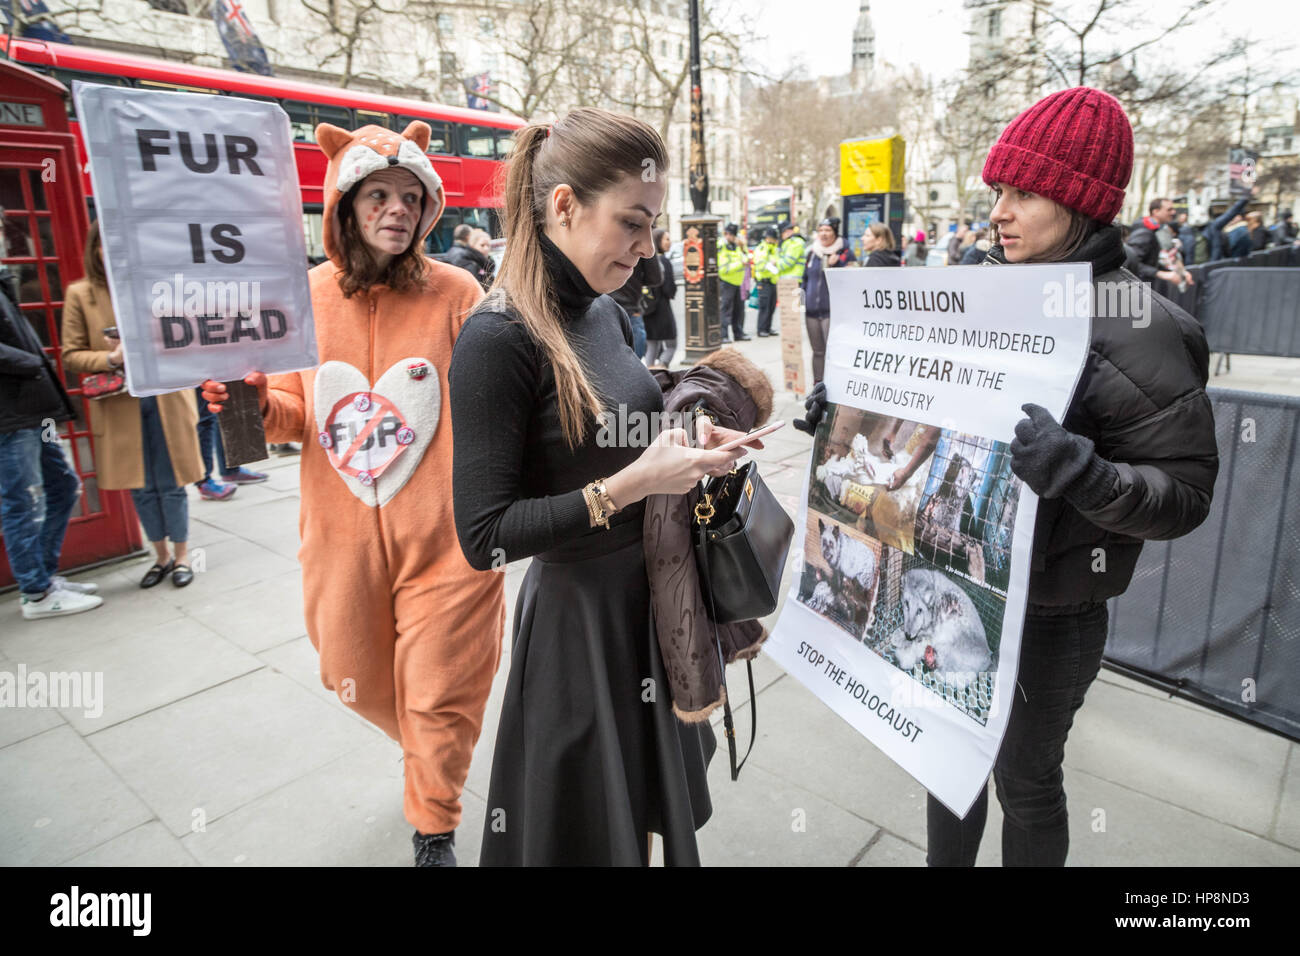 Londres, Royaume-Uni. Feb 19, 2017. Anti-Fur manifestations lors de la Semaine de la mode de Londres : Guy Josse/Alamy Live News Banque D'Images